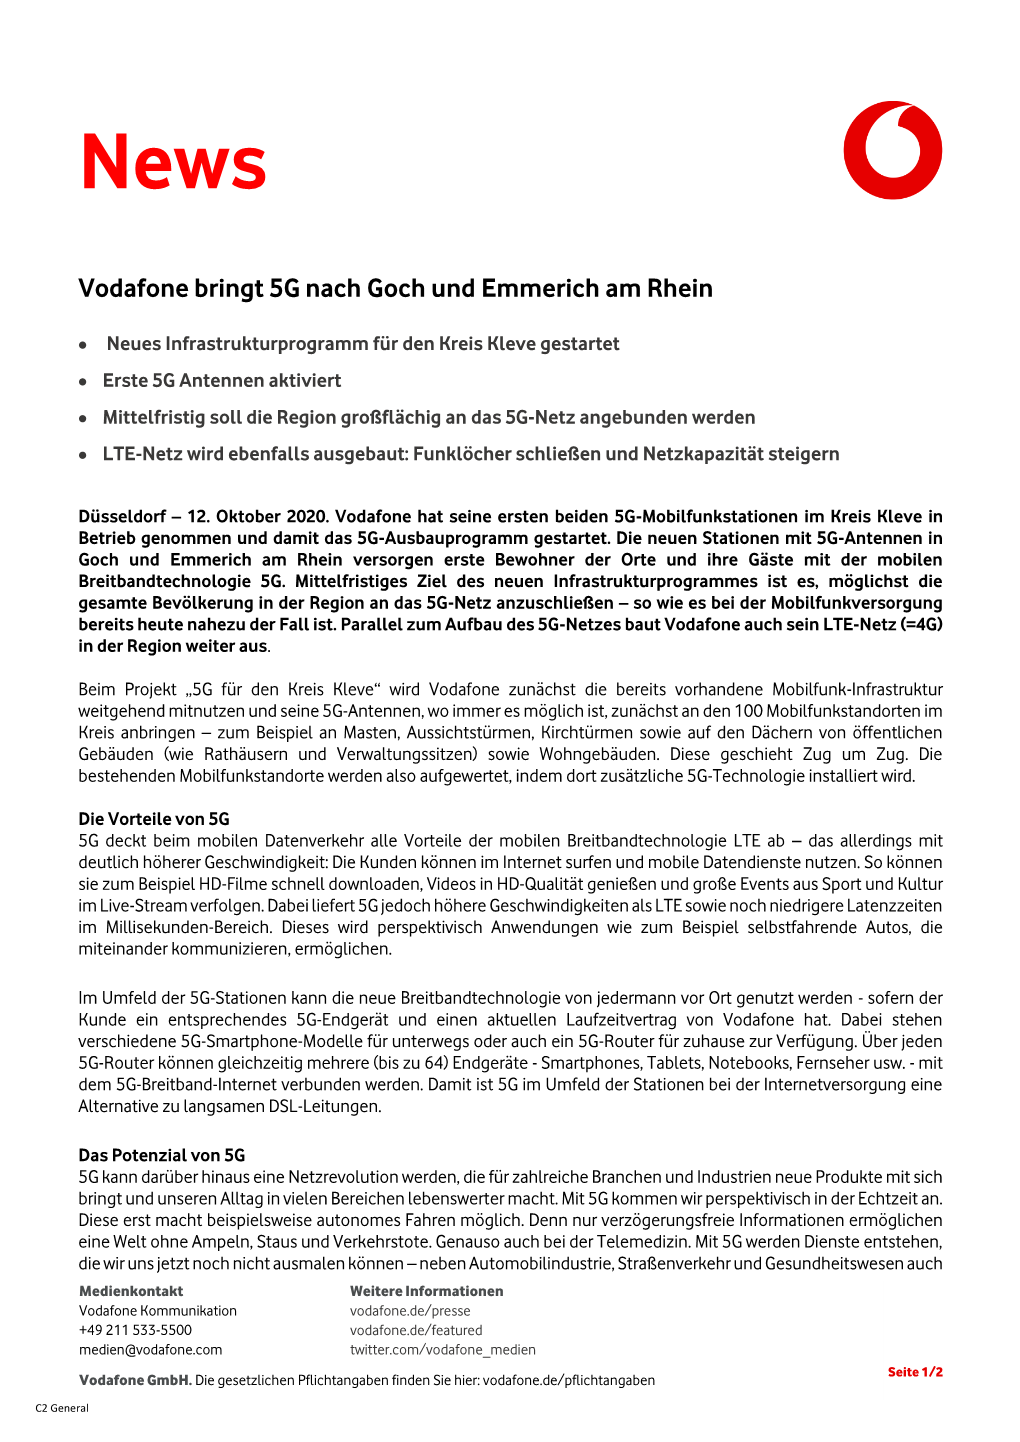 Vodafone Bringt 5G Nach Goch Und Emmerich Am Rhein